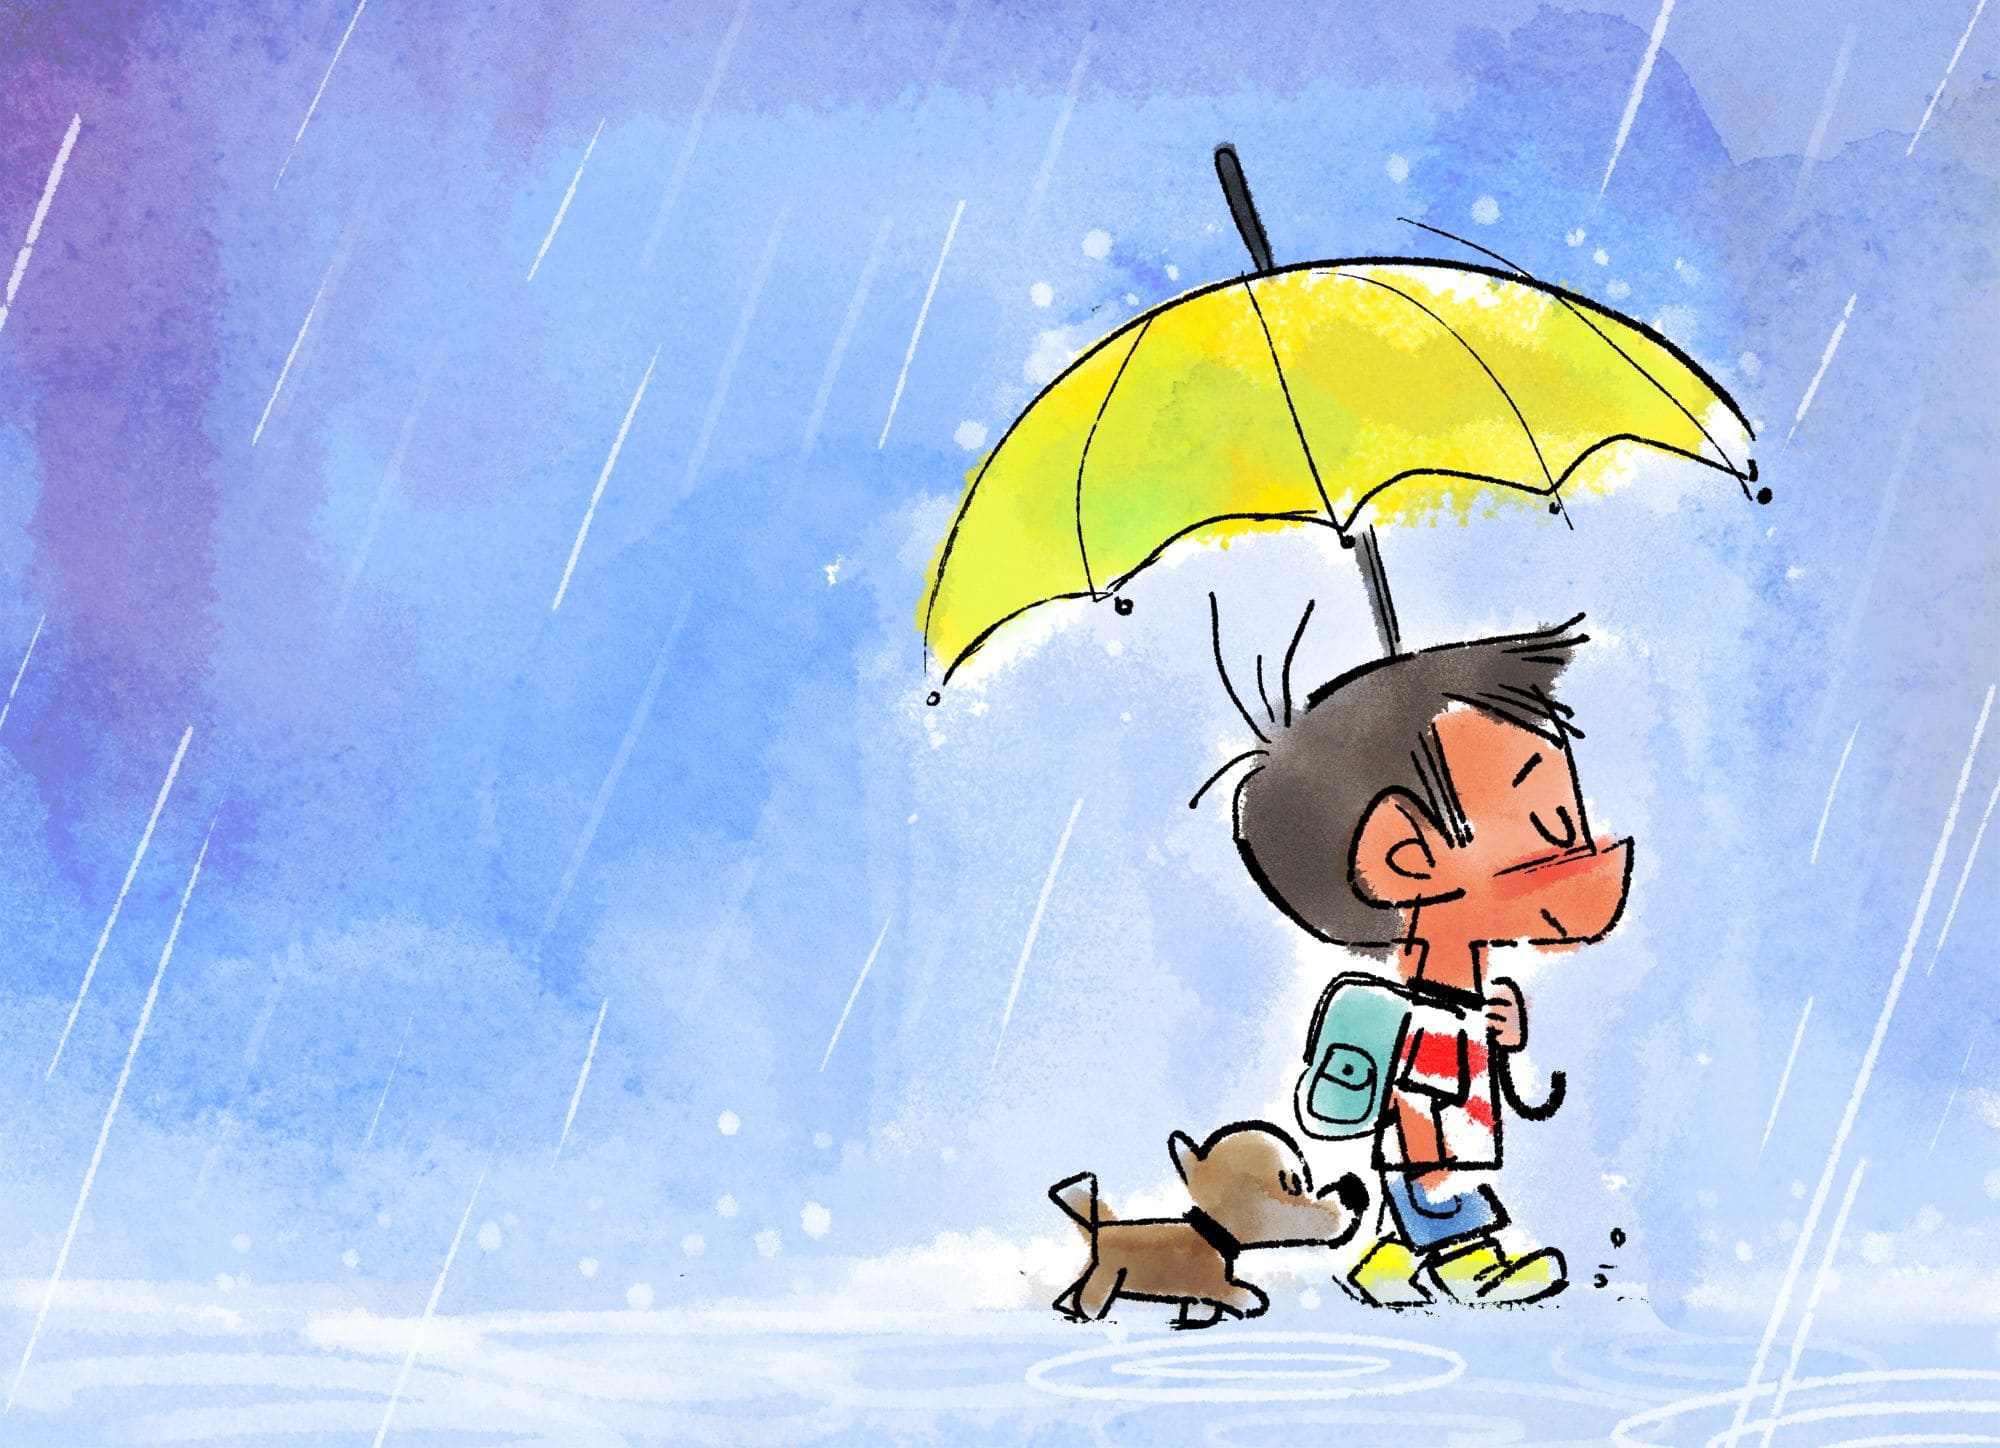 It is raining early. Идет дождь картинки для детей. Дождь картинки Рисованные для детей. Человек под дождем рисунок.